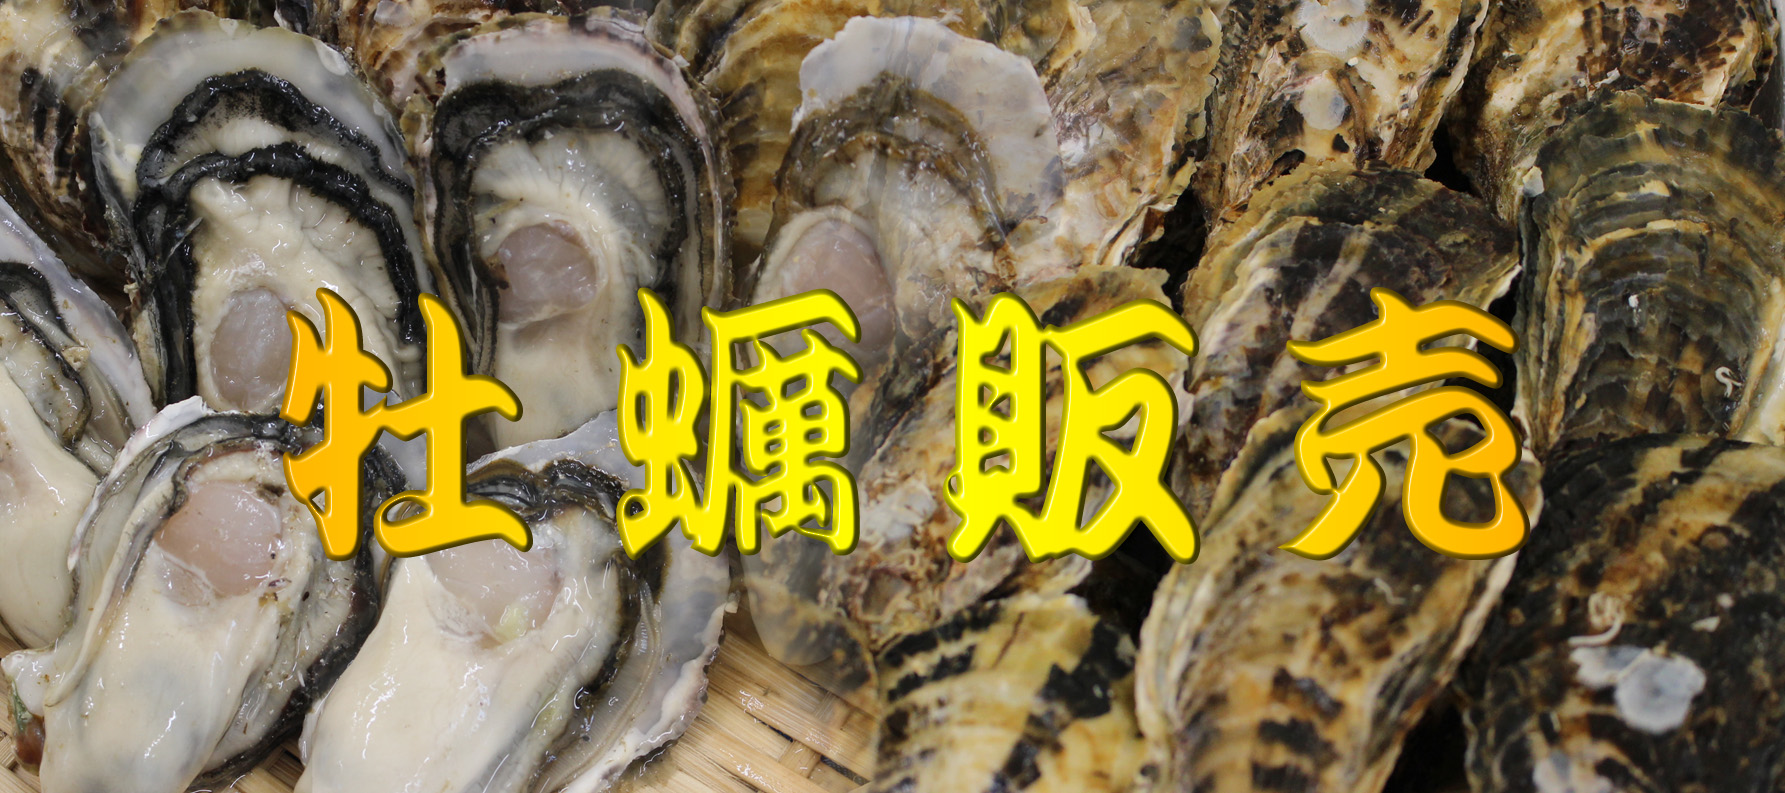 牡蠣販売 むき身 岩本和敏水産 相生の新鮮な牡蠣を明るく元気にお届けします